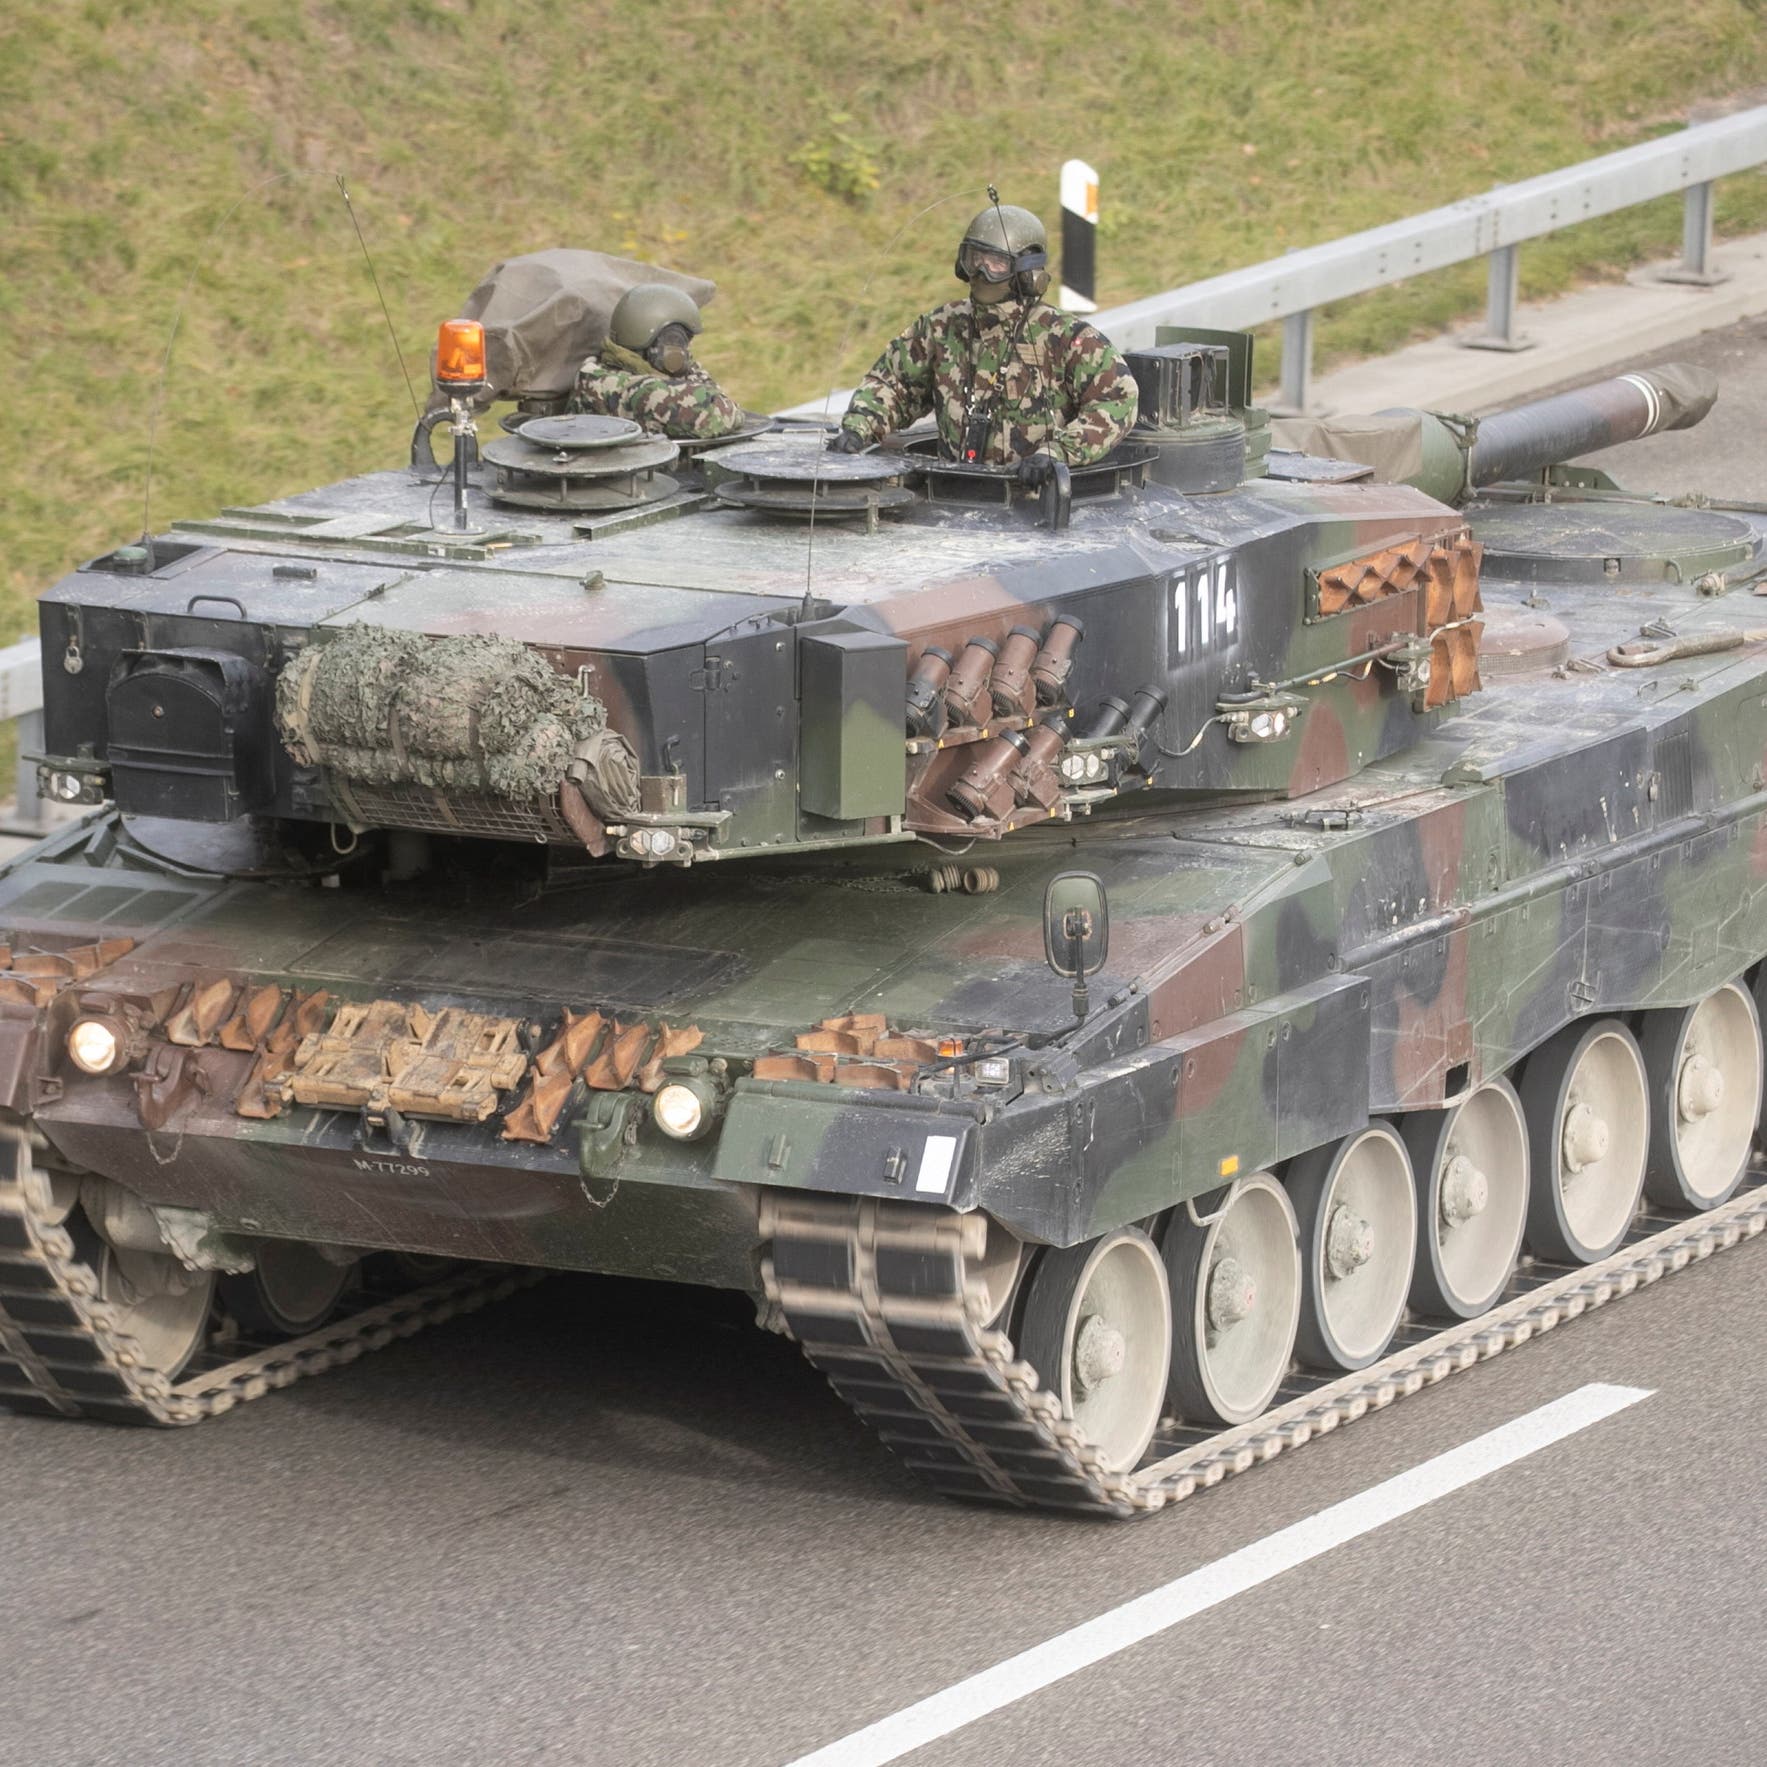 الكرملين يحذر ألمانيا من تسليم دبابات لكييف.. وبرلين: القرار سياسي بحت